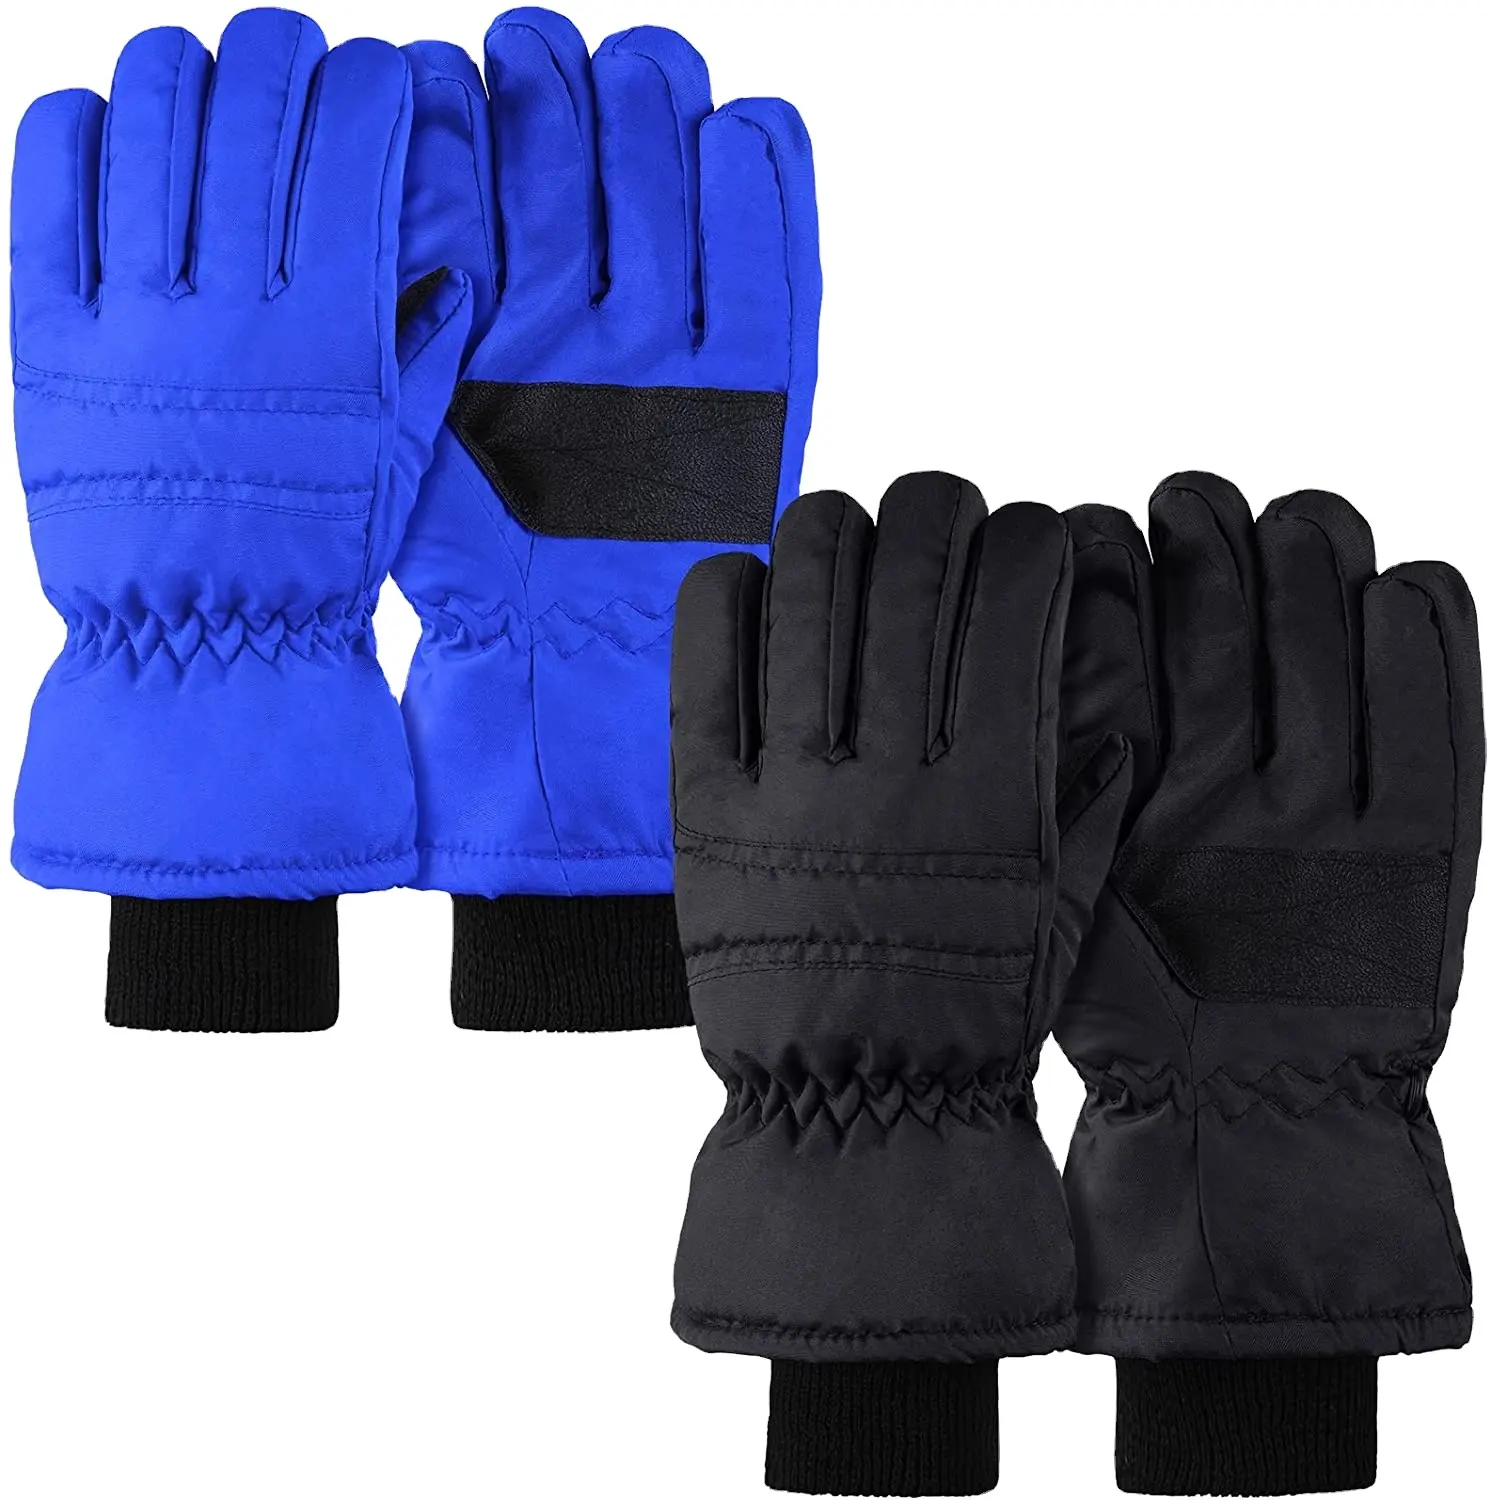 Groothandelsprijs Kids Ski Handschoenen Waterdicht Winter Warm Full Finger Ski Sneeuw Handschoenen Voor Kinderen